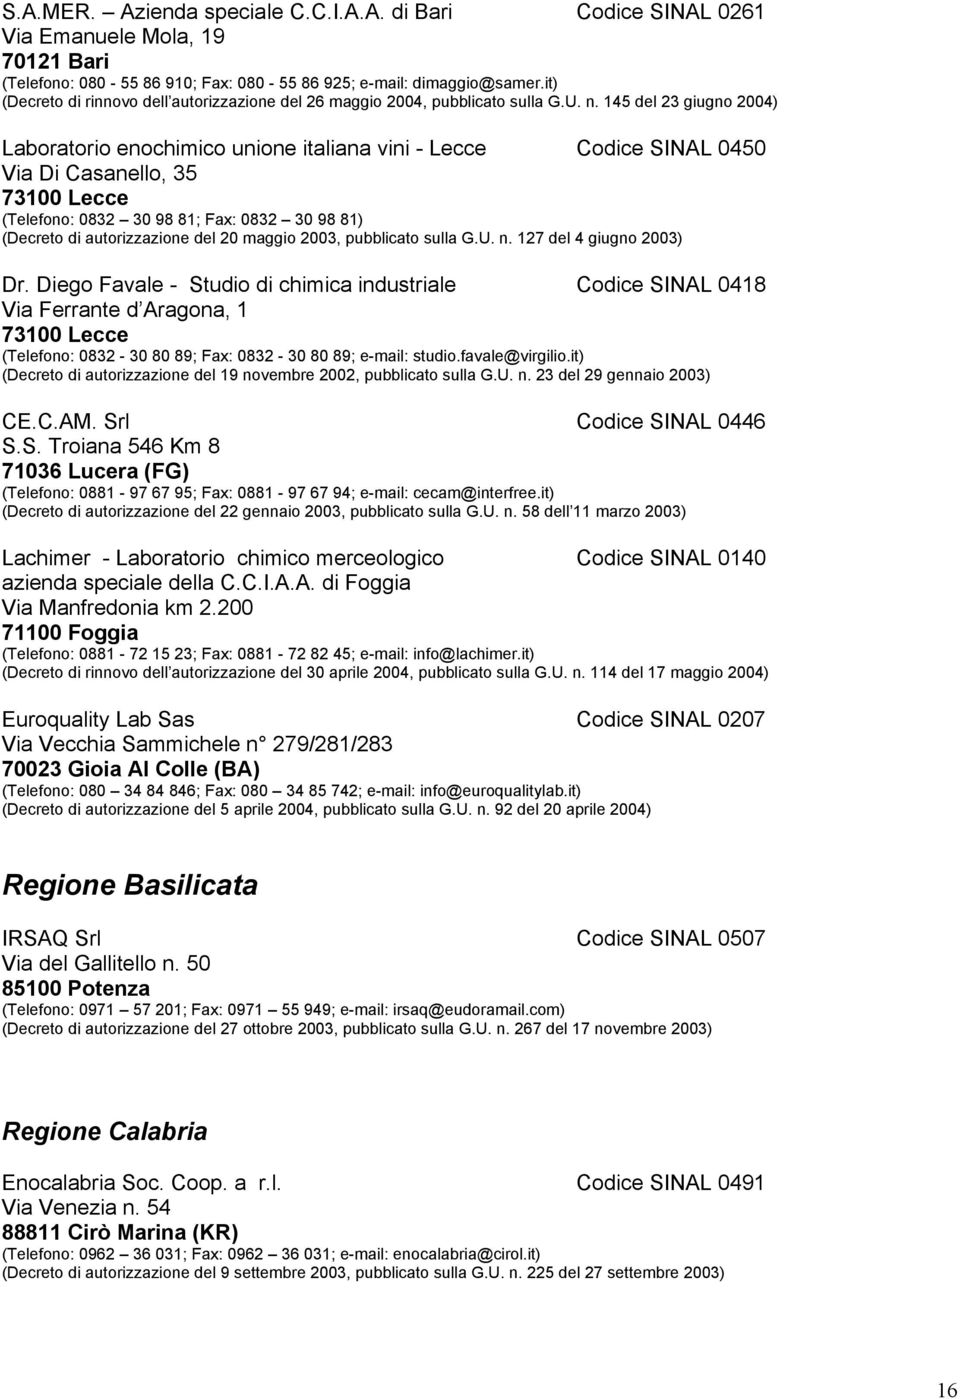 145 del 23 giugno 2004) Laboratorio enochimico unione italiana vini - Lecce Codice SINAL 0450 Via Di Casanello, 35 73100 Lecce (Telefono: 0832 30 98 81; Fax: 0832 30 98 81) (Decreto di autorizzazione